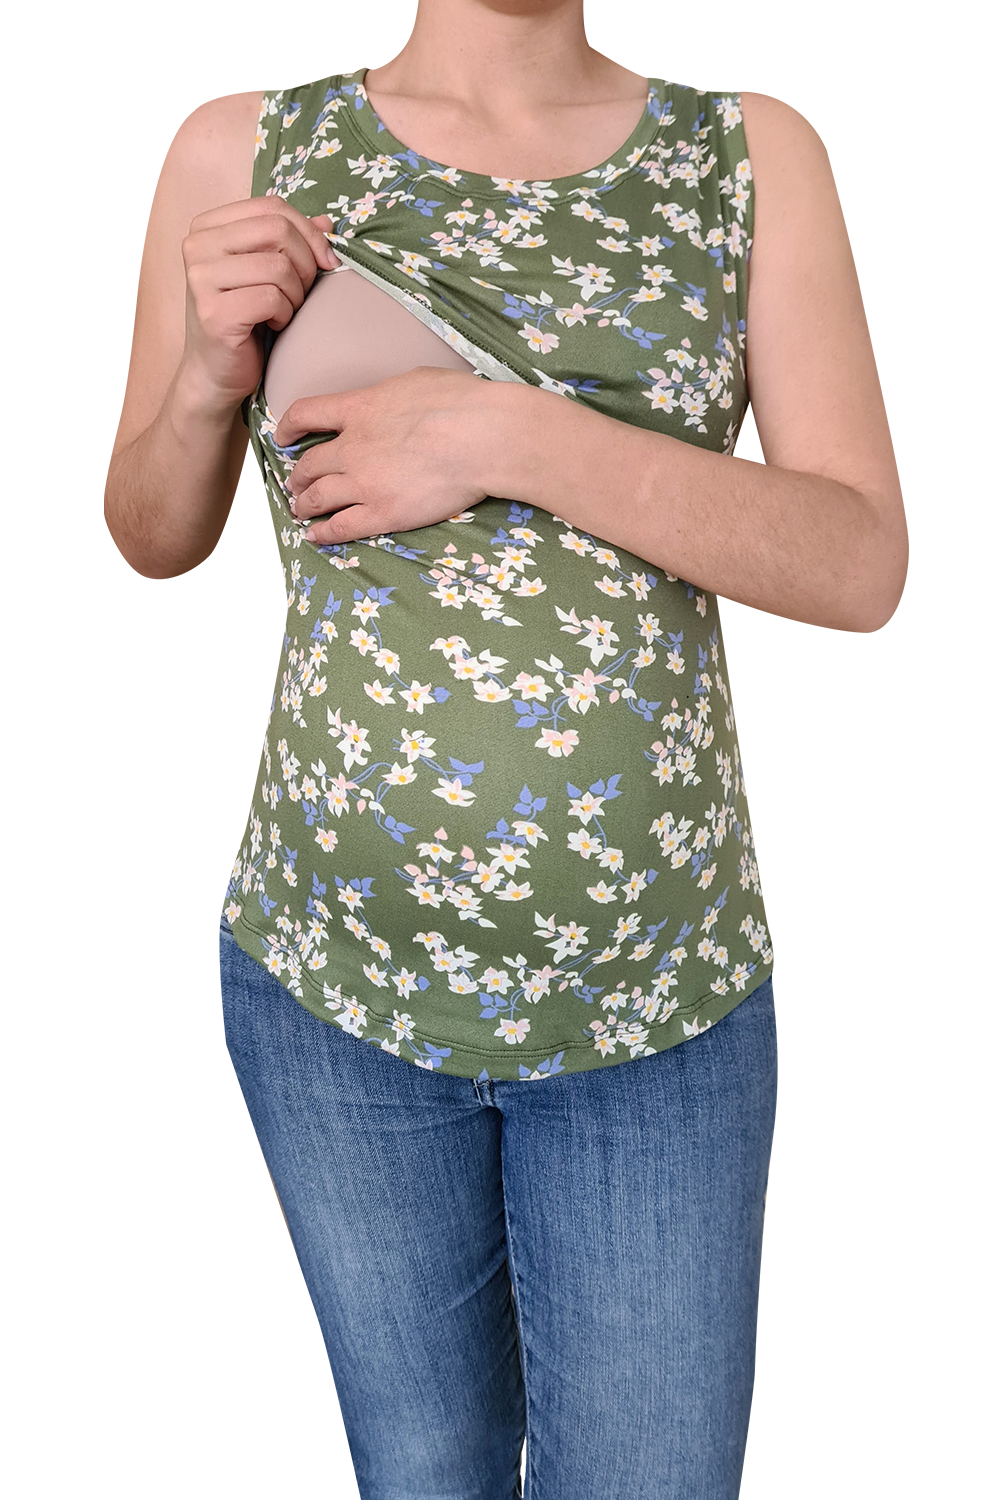 Blusa maternidad-lactancia. Tirante ancho Verde flores